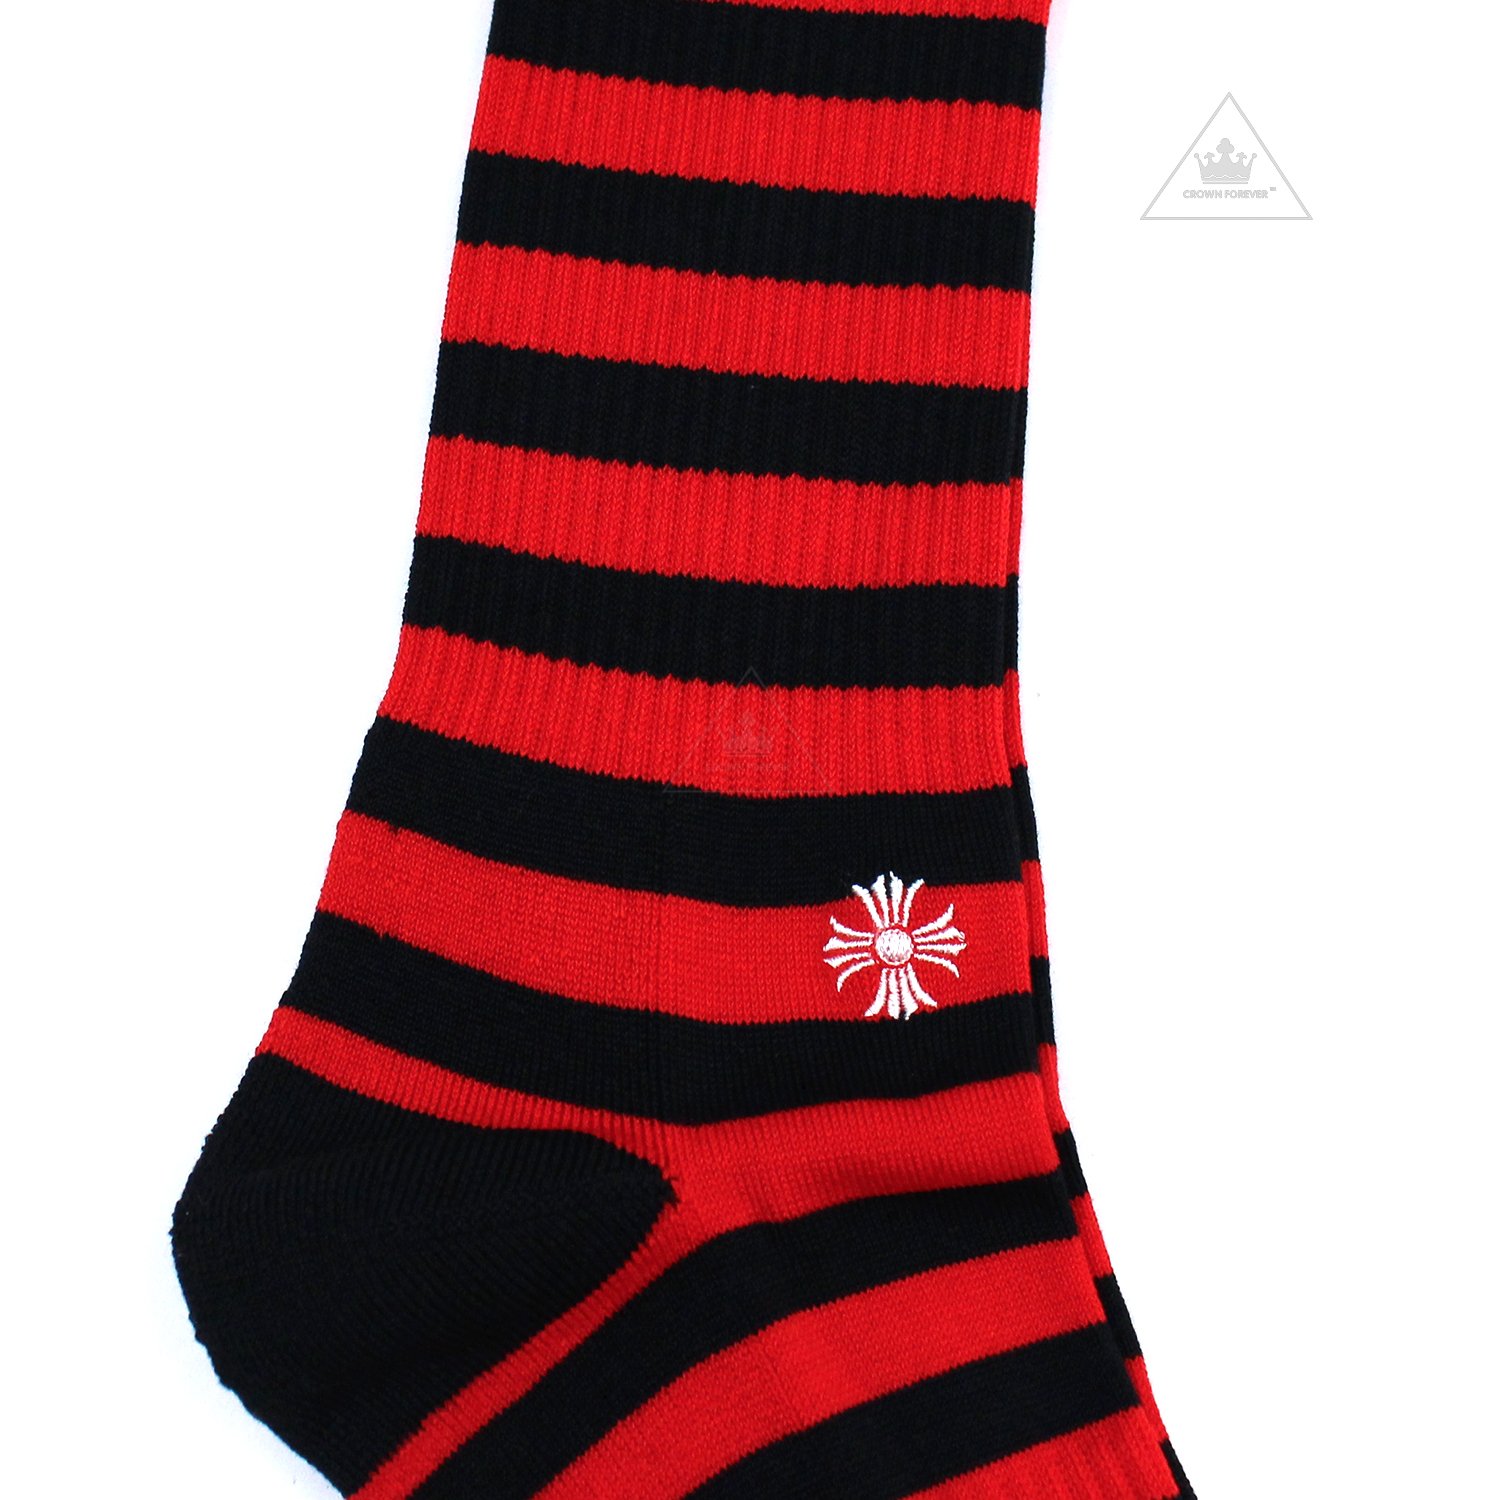 【クロムハーツCH】スピリット 靴下・ソックス3カラーセット - 海外ブランド・ファッション通販【GXOMENS】